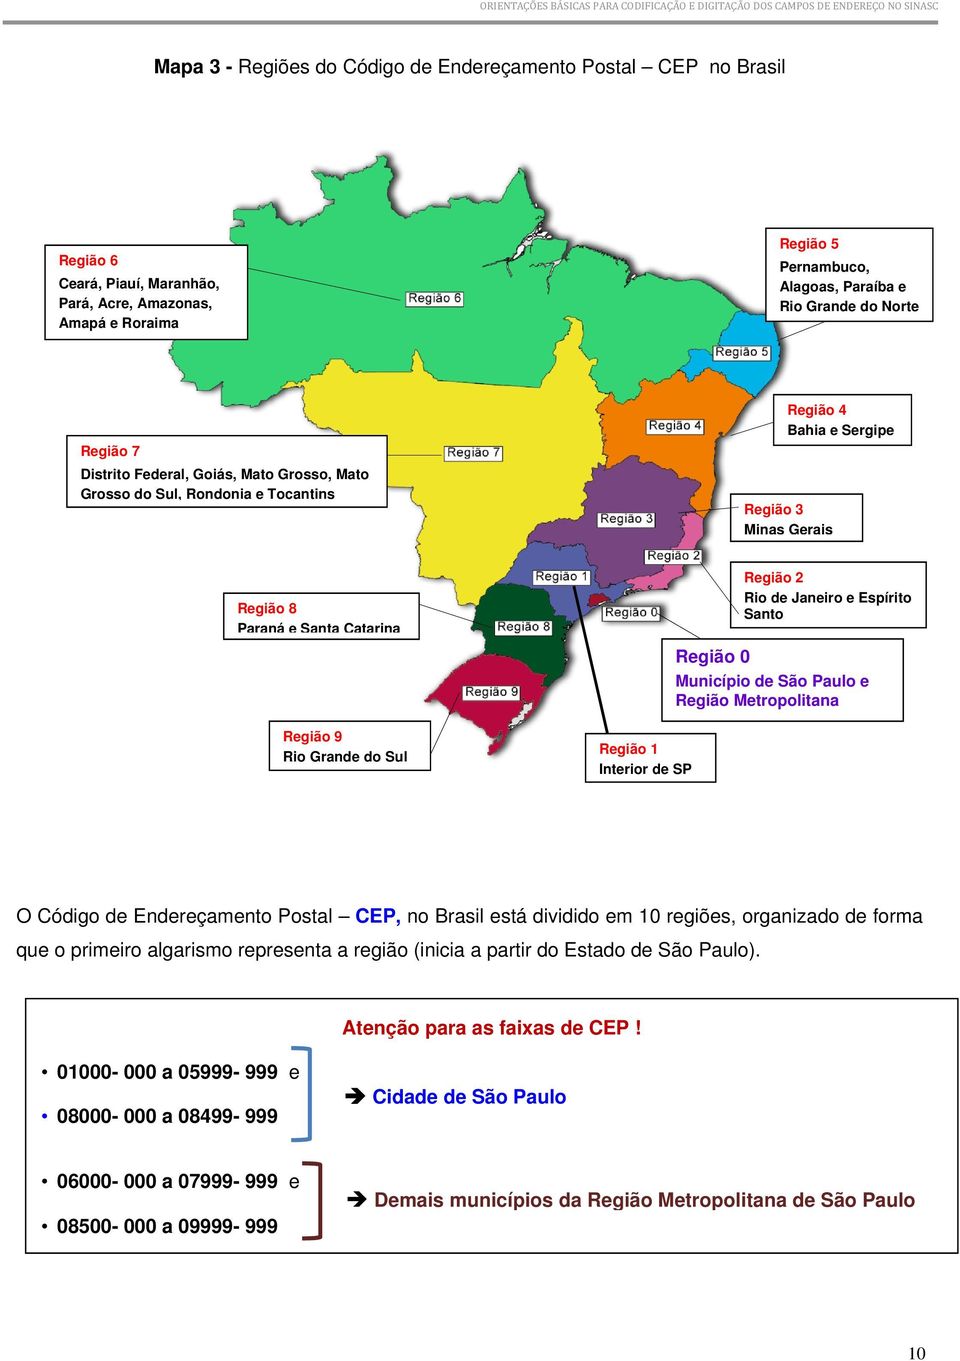 Região 1 Interior de SP Região 2 Rio de Janeiro e Espírito Santo Região 0 Município de São Paulo e Região Metropolitana O Código de Endereçamento Postal CEP, no Brasil está dividido em 10 regiões,